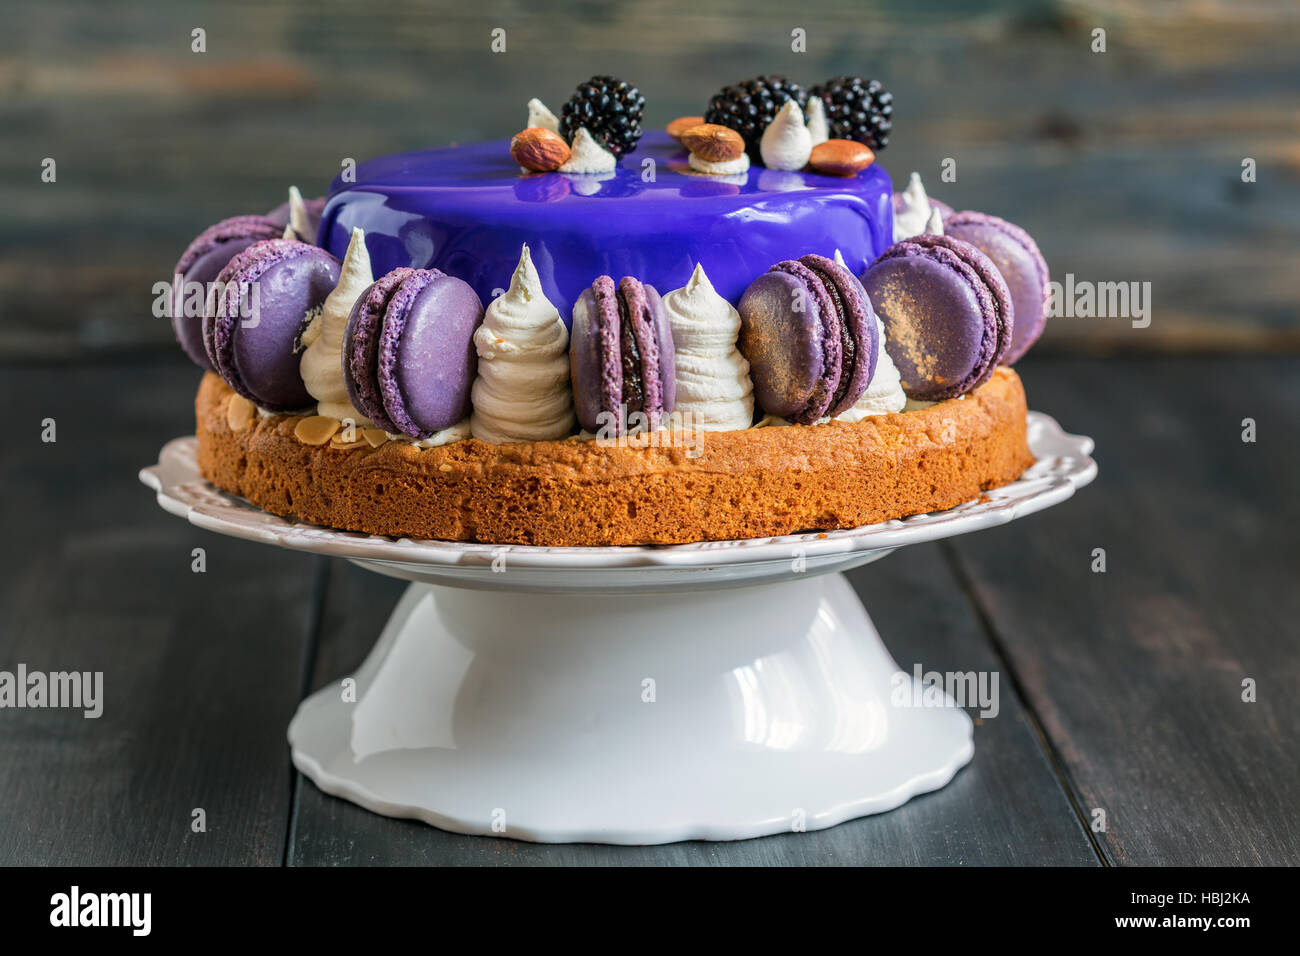 Mousse-Torte mit einer glatten farbige Glasur. Stockfoto